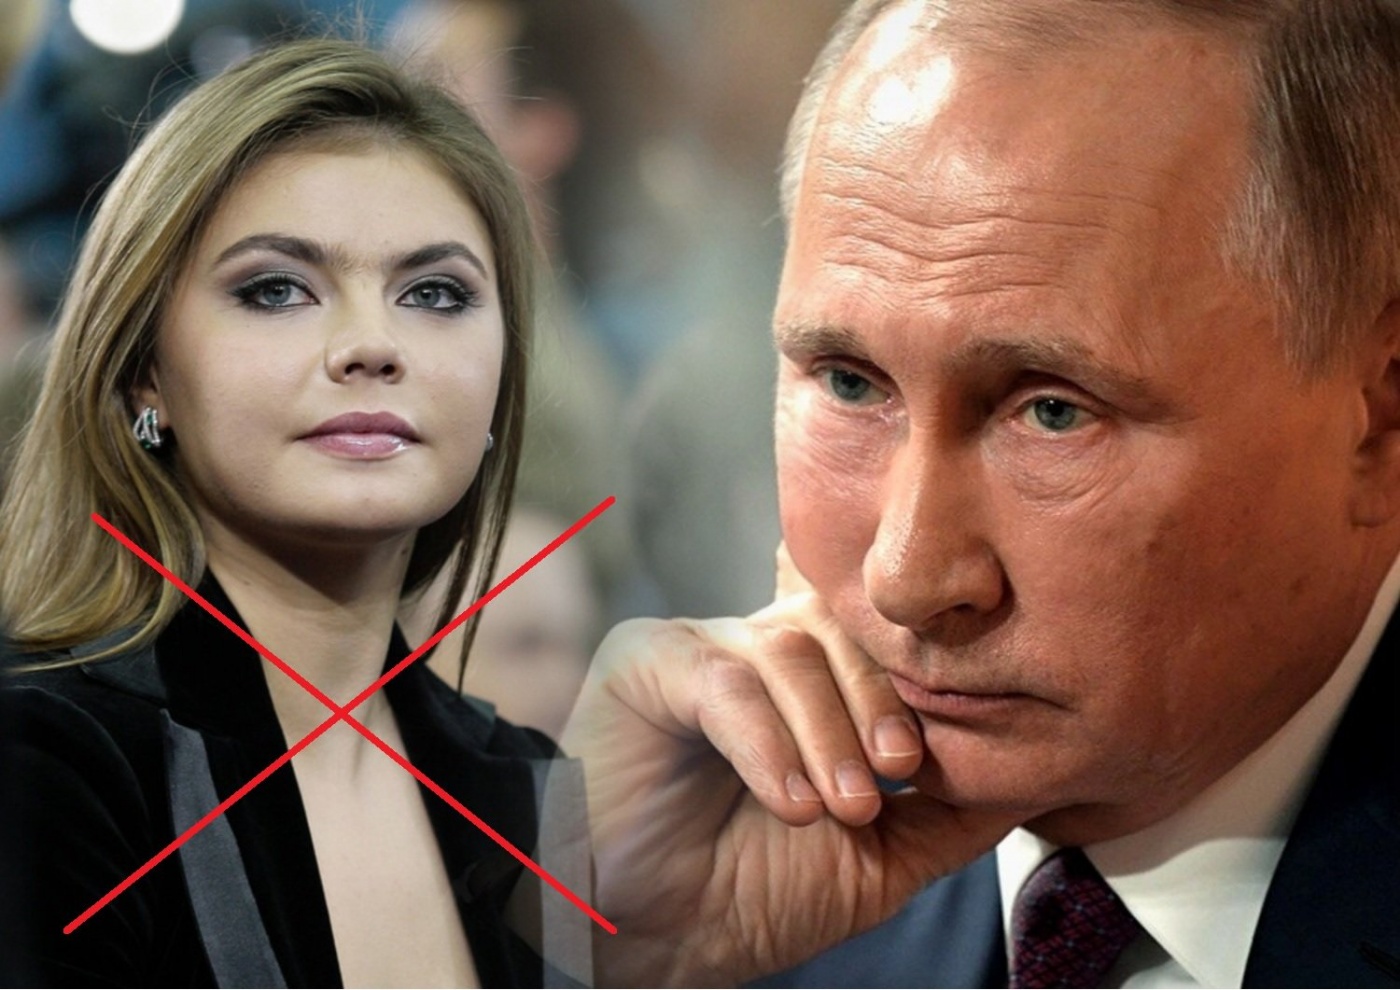 Великобритания ввела санкции против Кабаевой и бывшей жены Путина